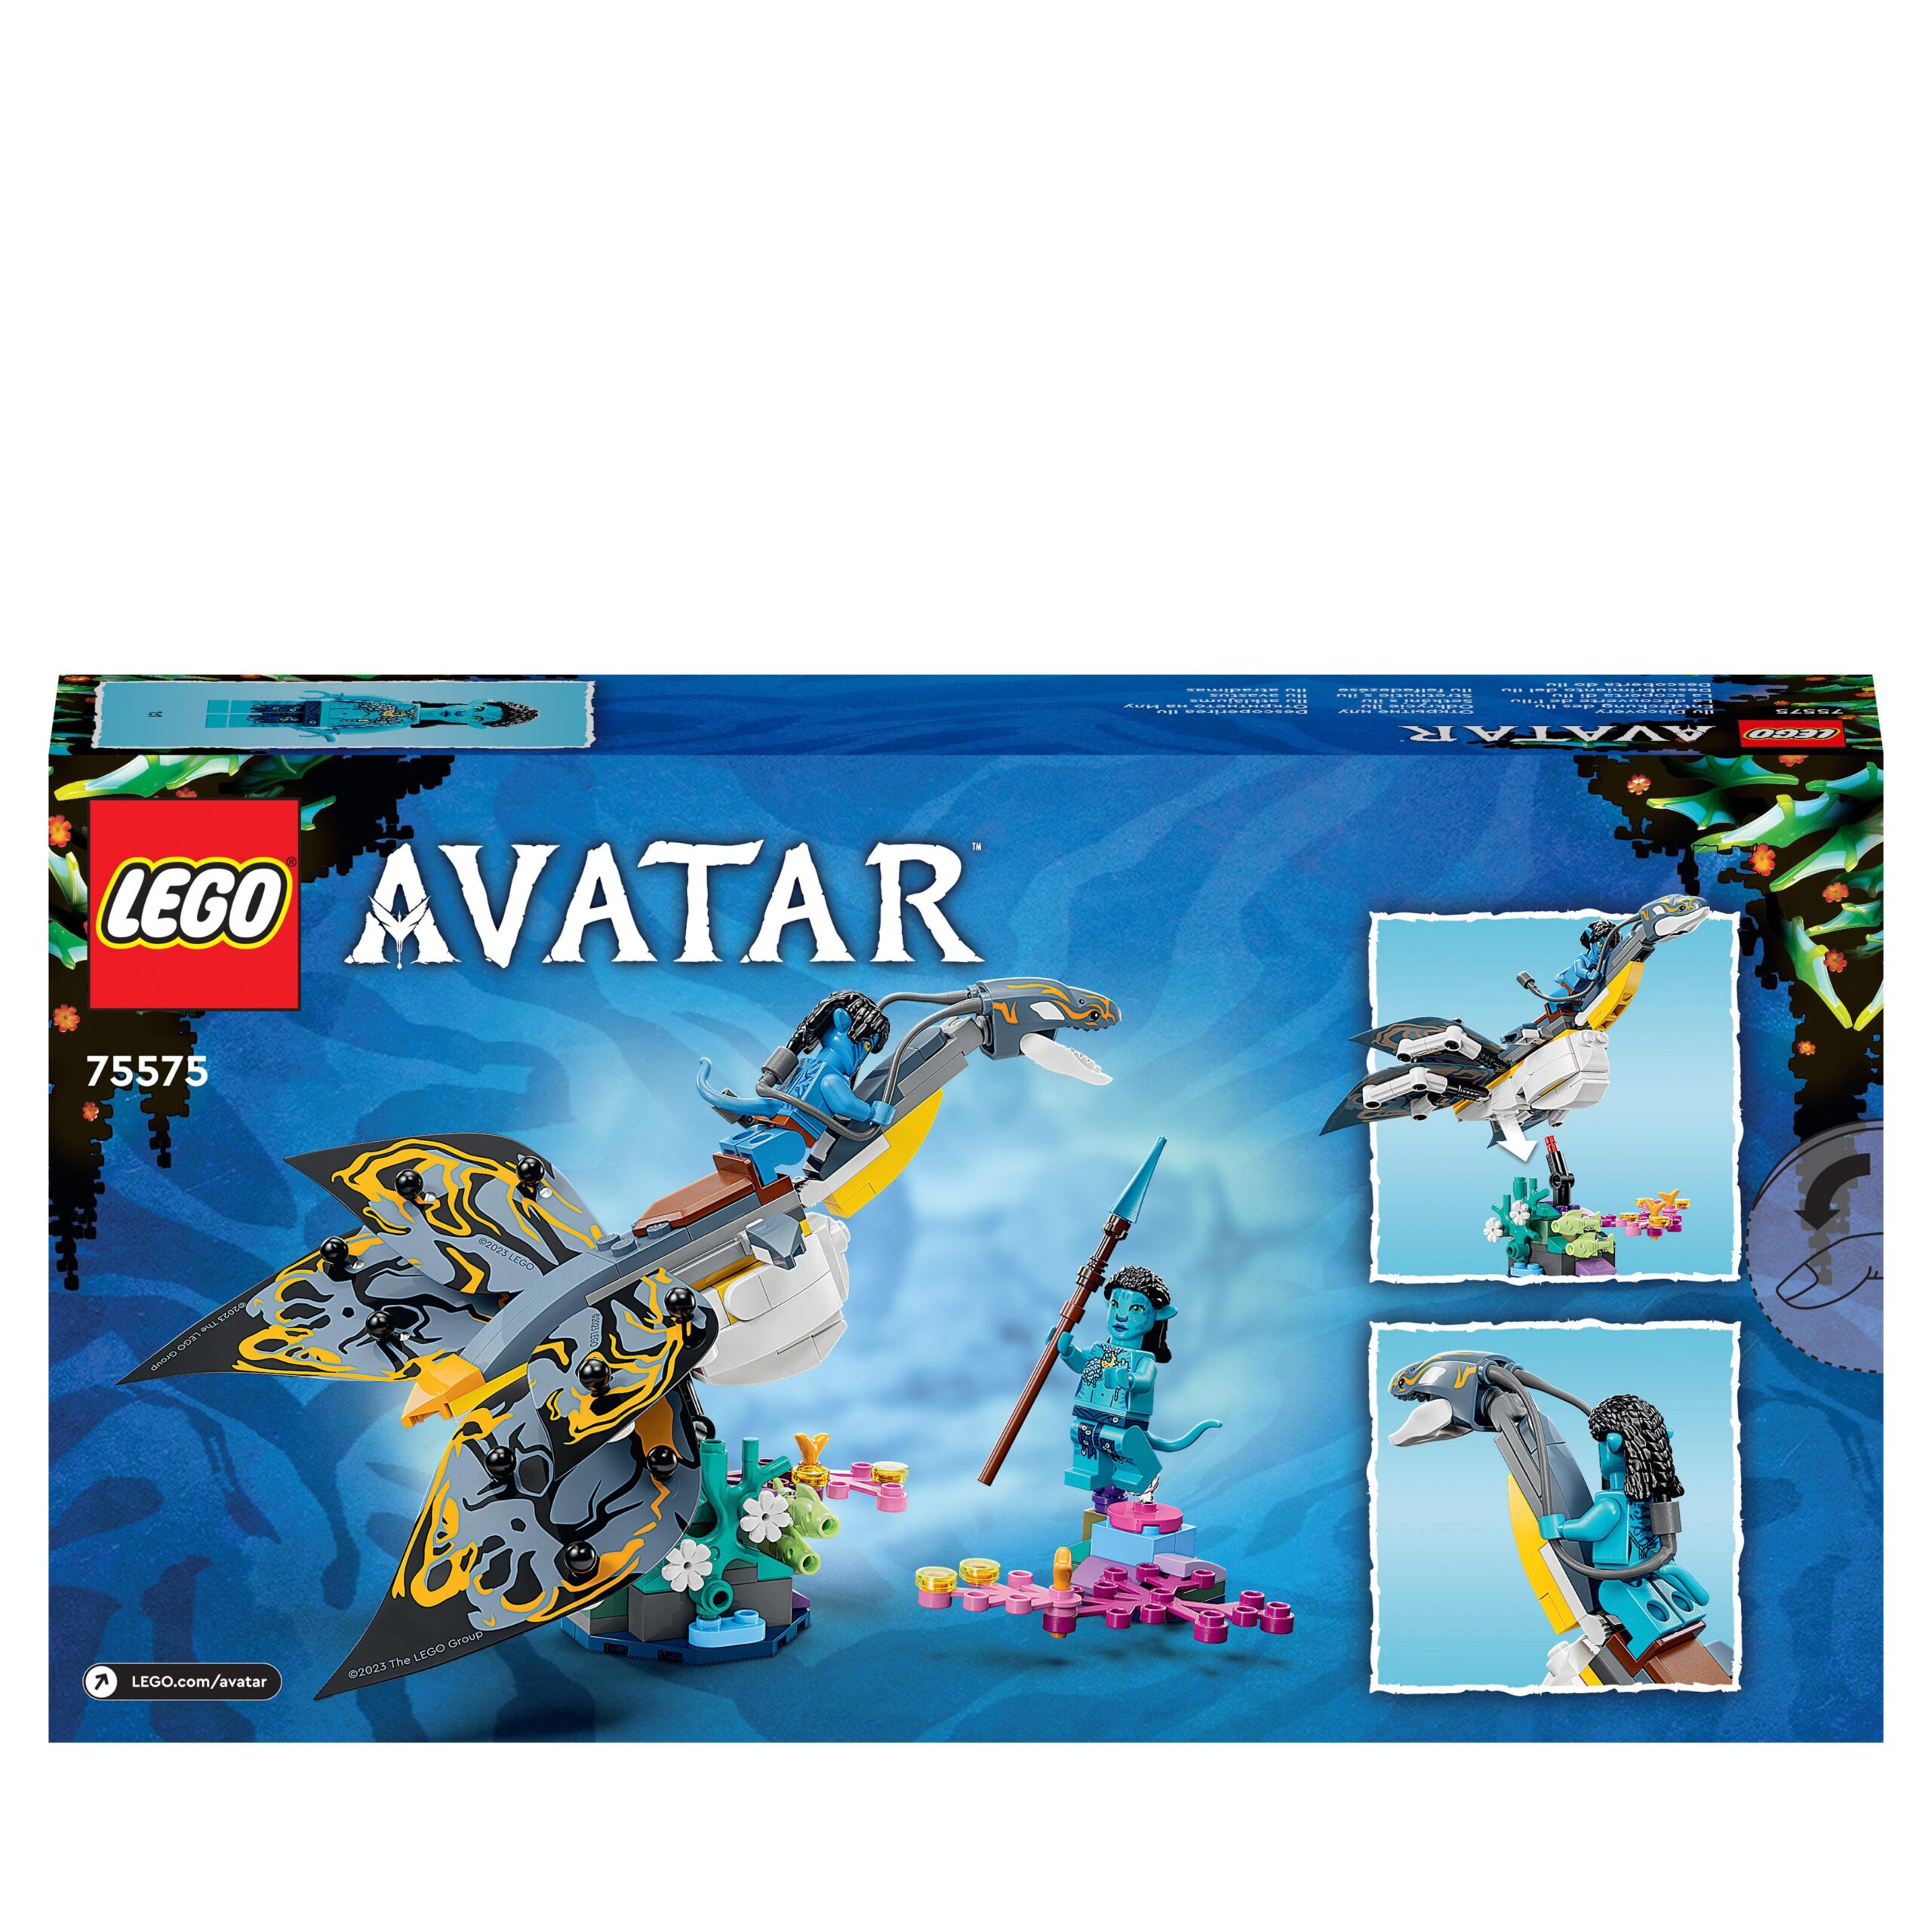 Lego avatar 75575 la scoperta di ilu, set film la via dell’acqua da collezione, creatura giocattolo subacquea simile ad animale - Lego